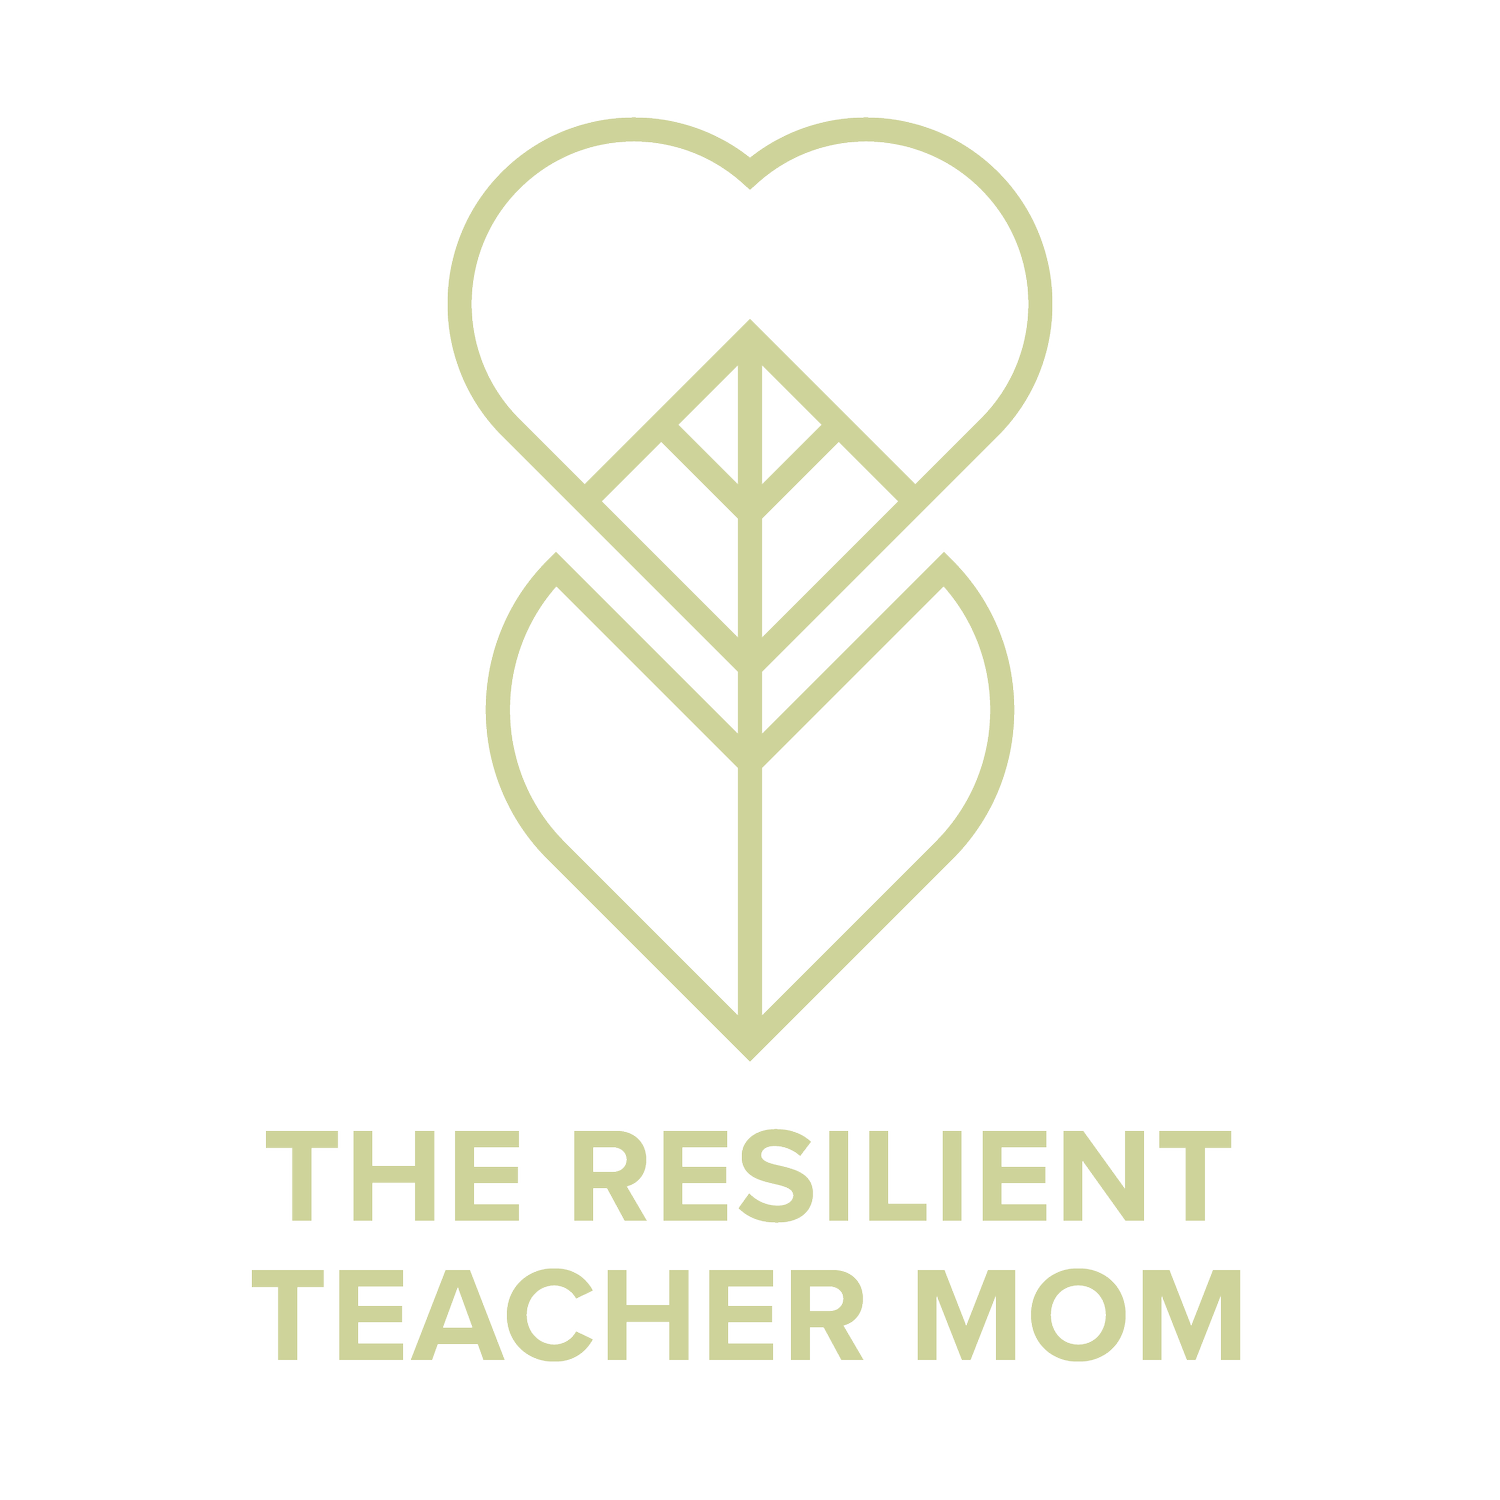 The Resilient Teacher Mom